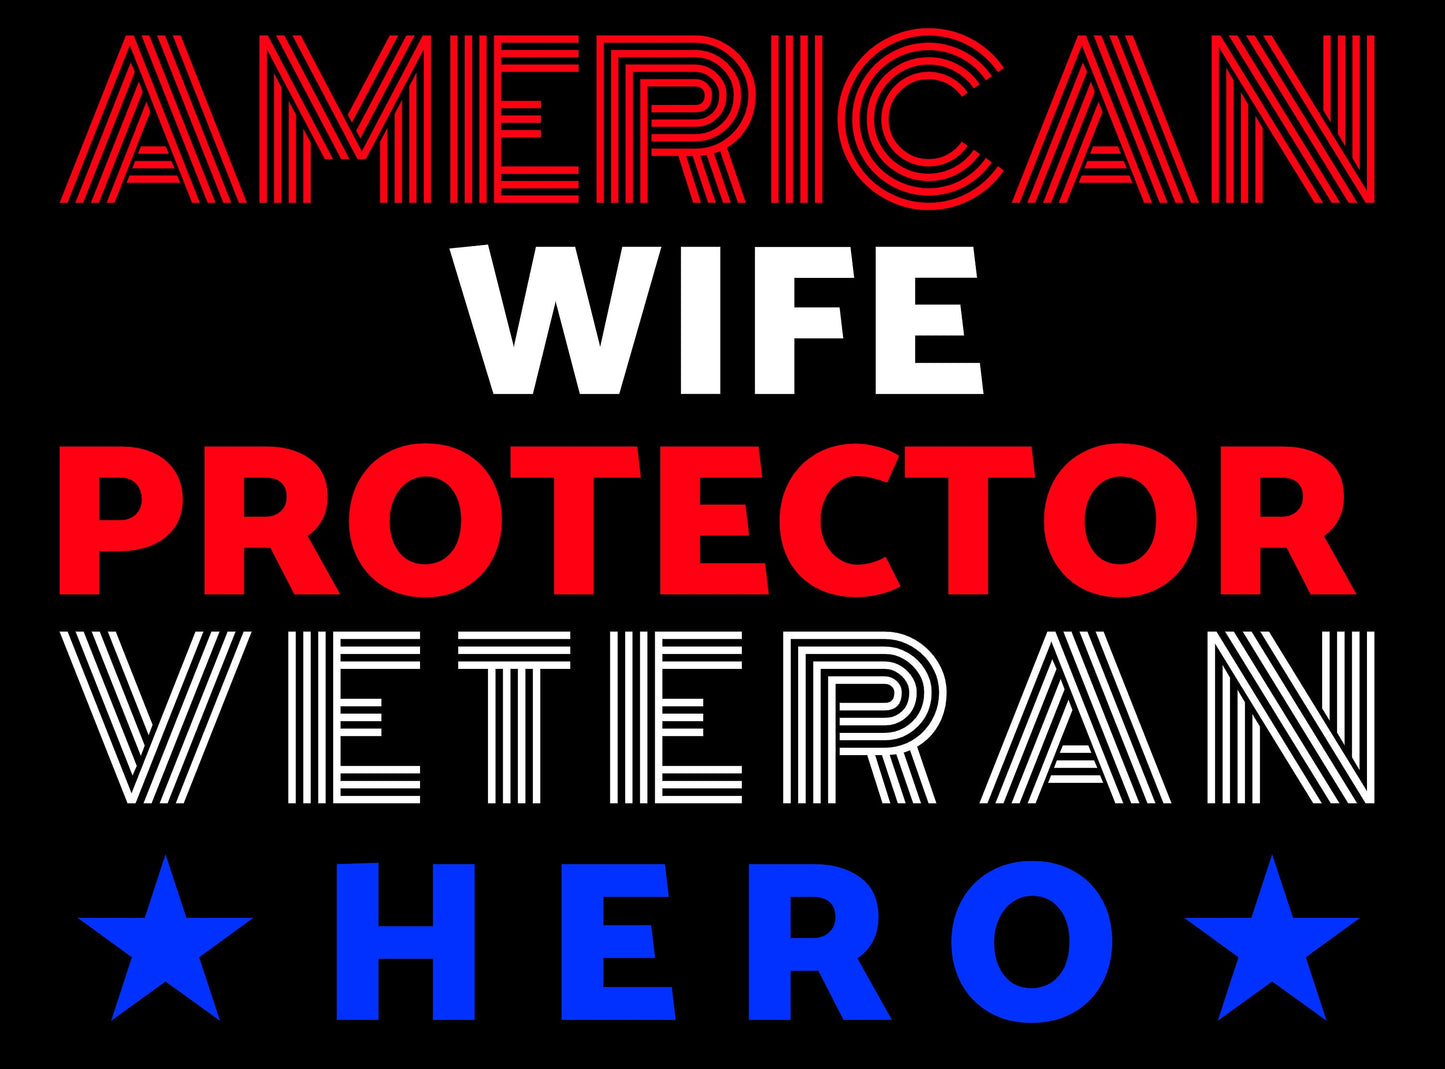 American Wife Protector Veteran Hero - PNG Digital Download for print